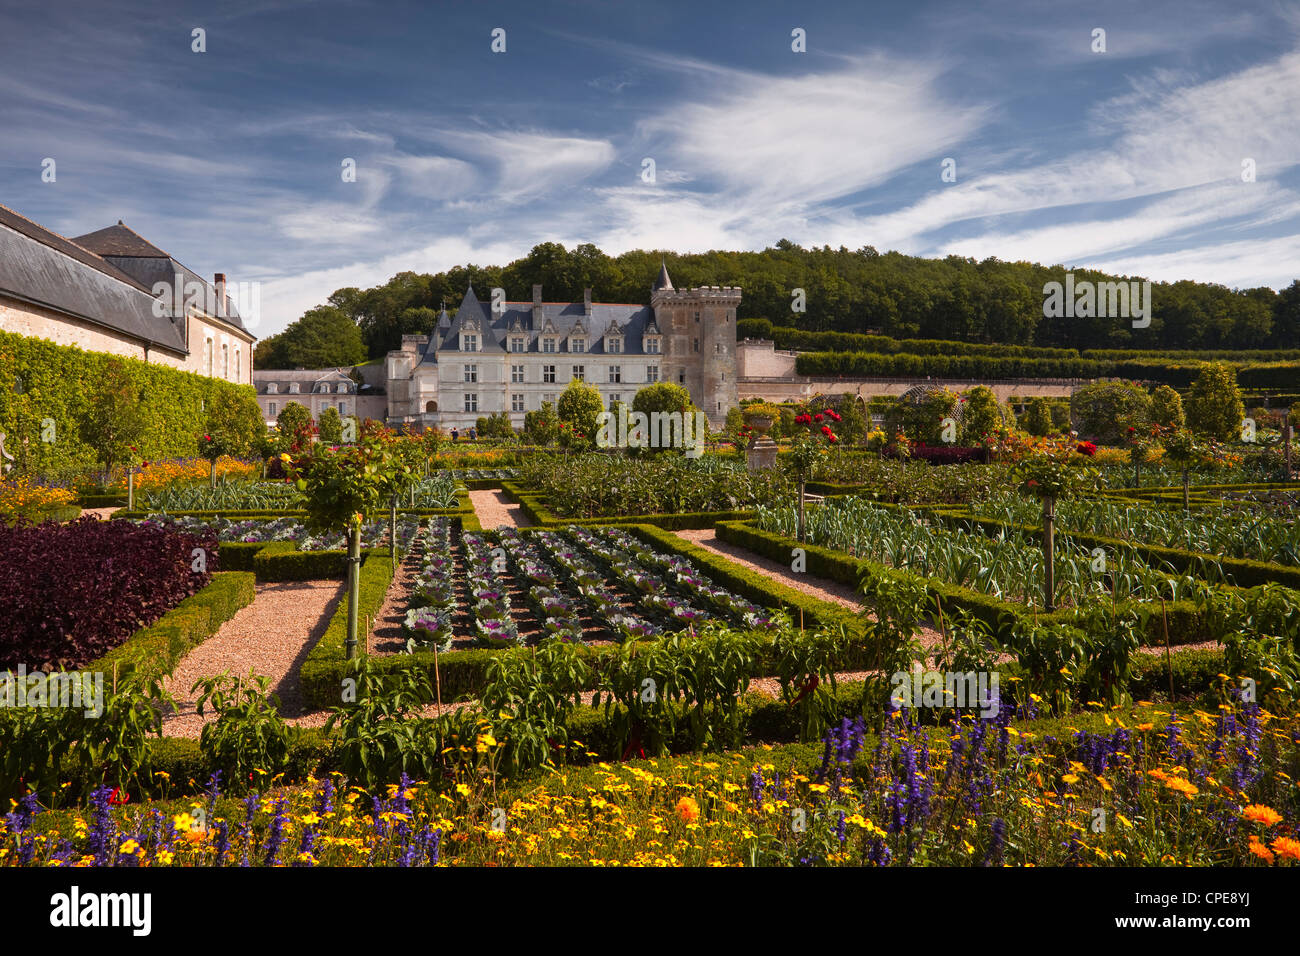 Chateau de Villandry, UNESCO World Heritage Site, Villandry, Indre-et-Loire, Loire Valley, France, Europe Stock Photo